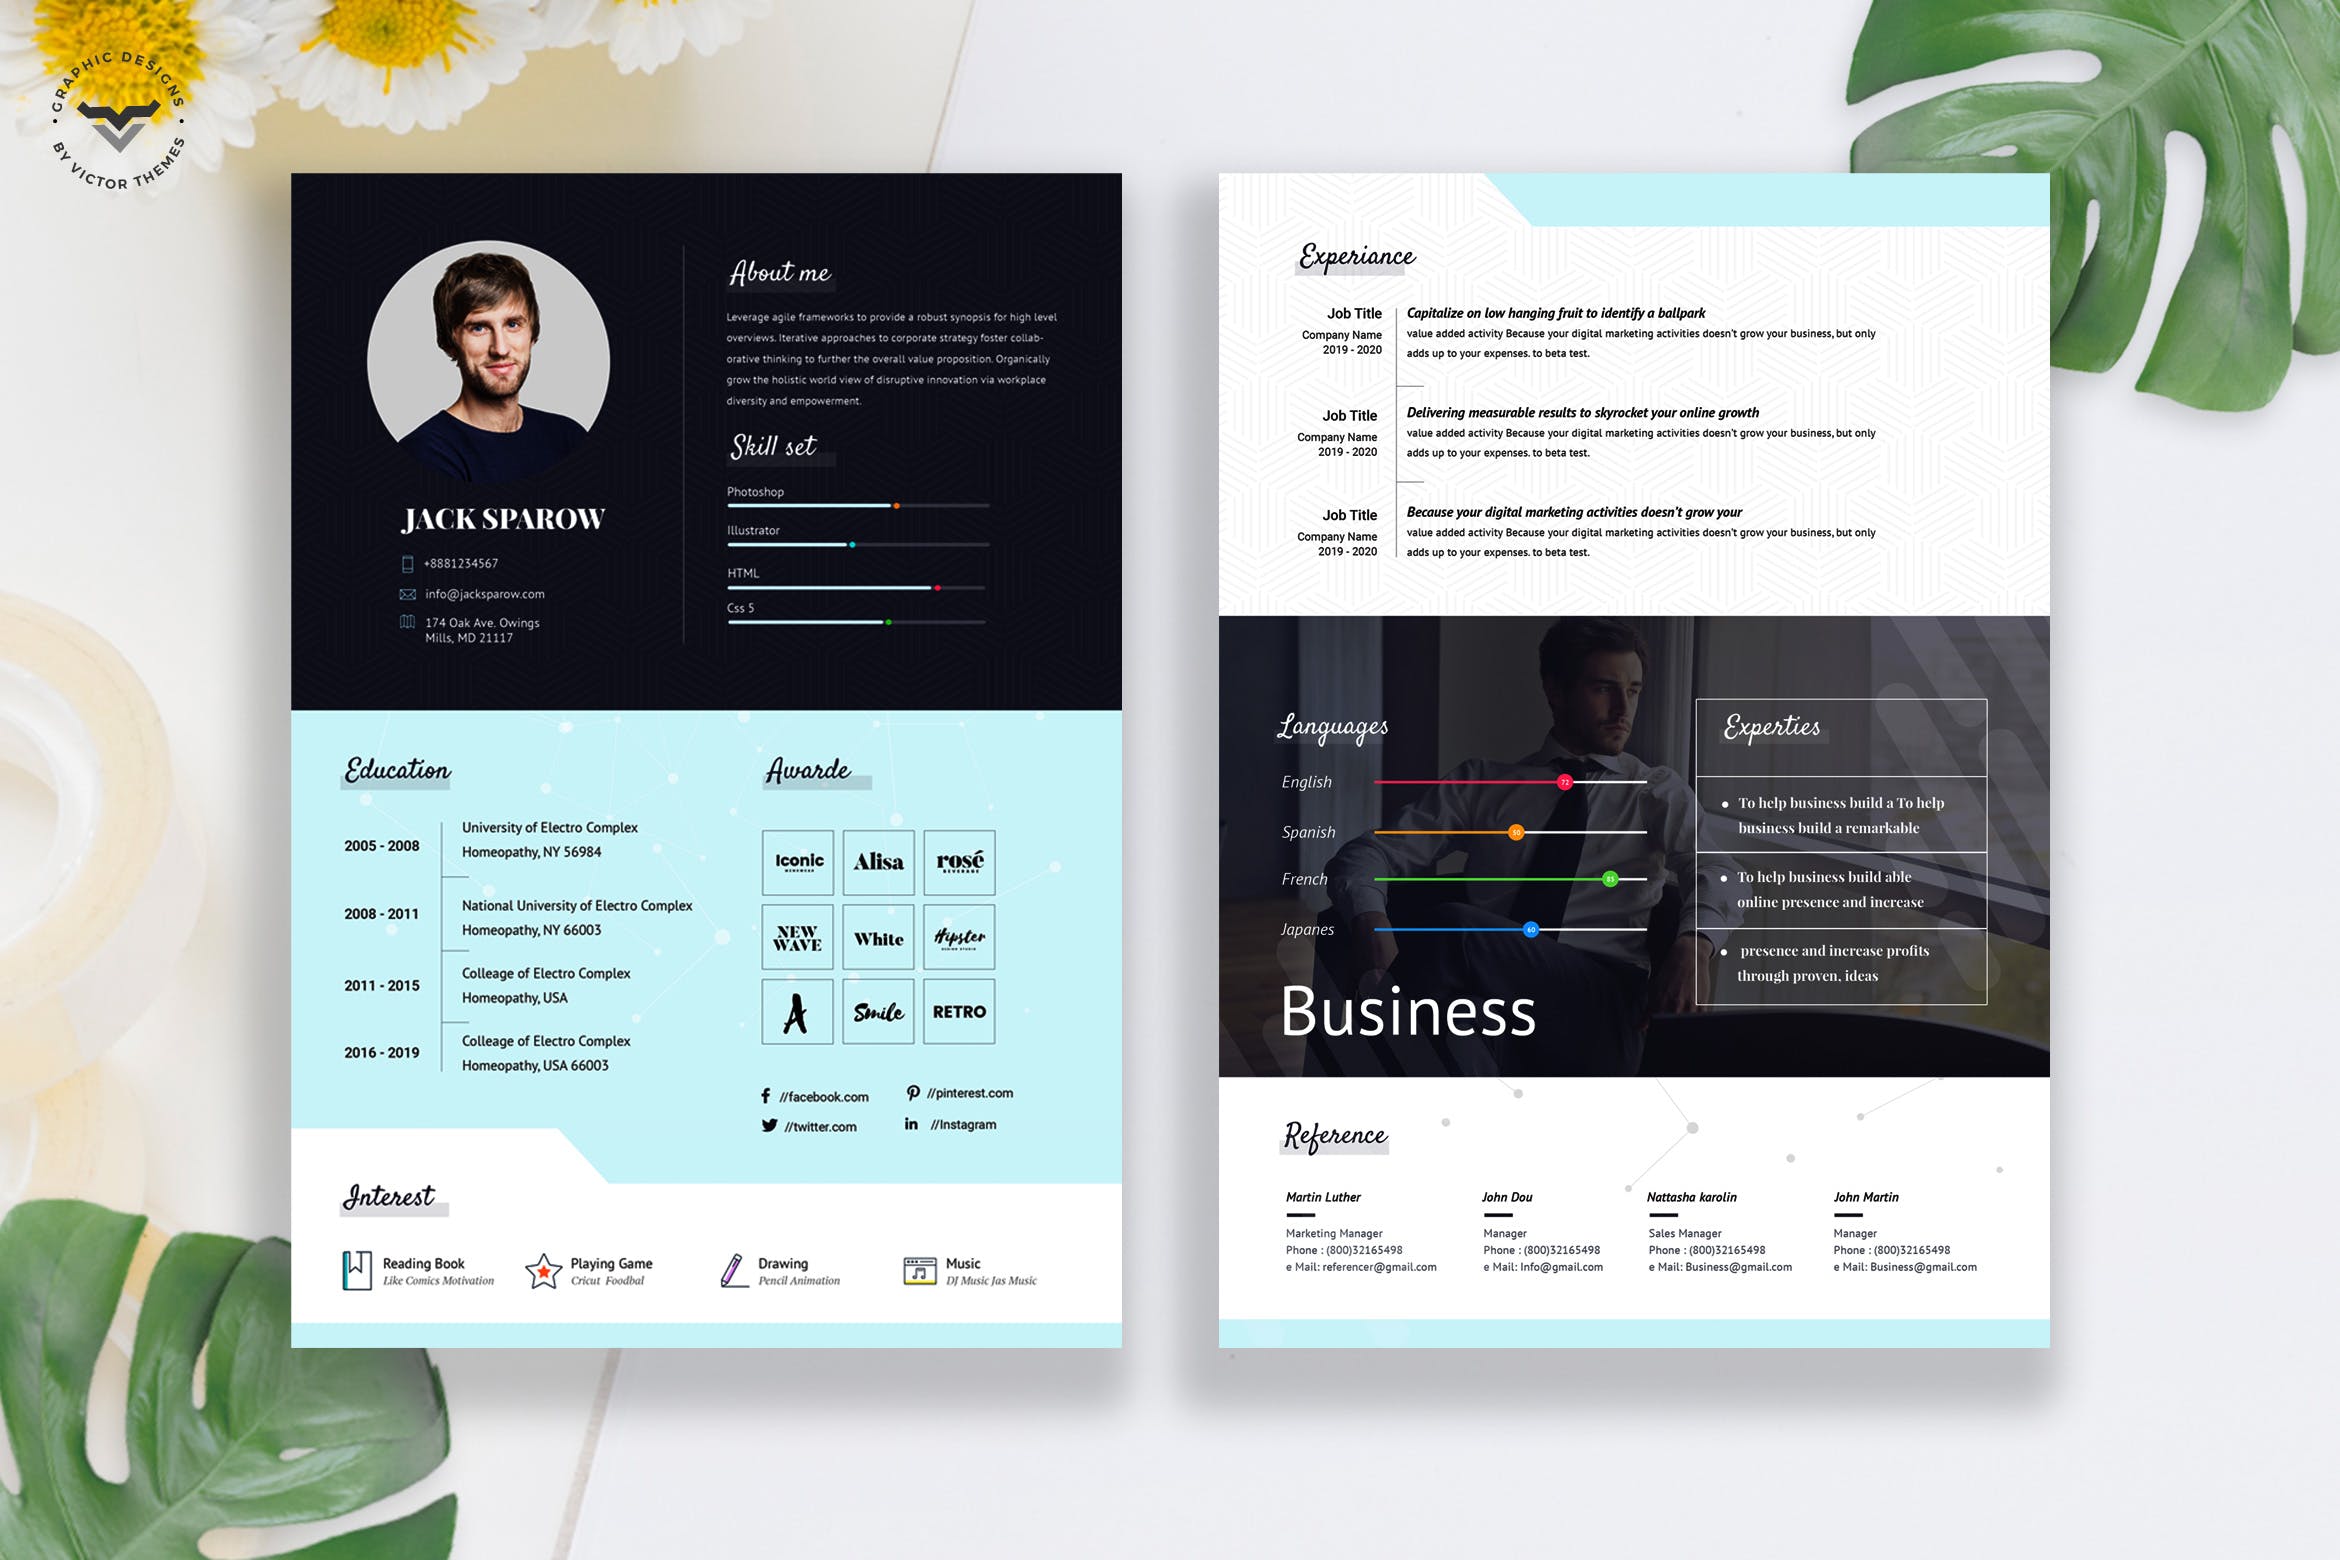 两页式创意设计师CV第一素材精选简历模板 Creative Business CV Template插图